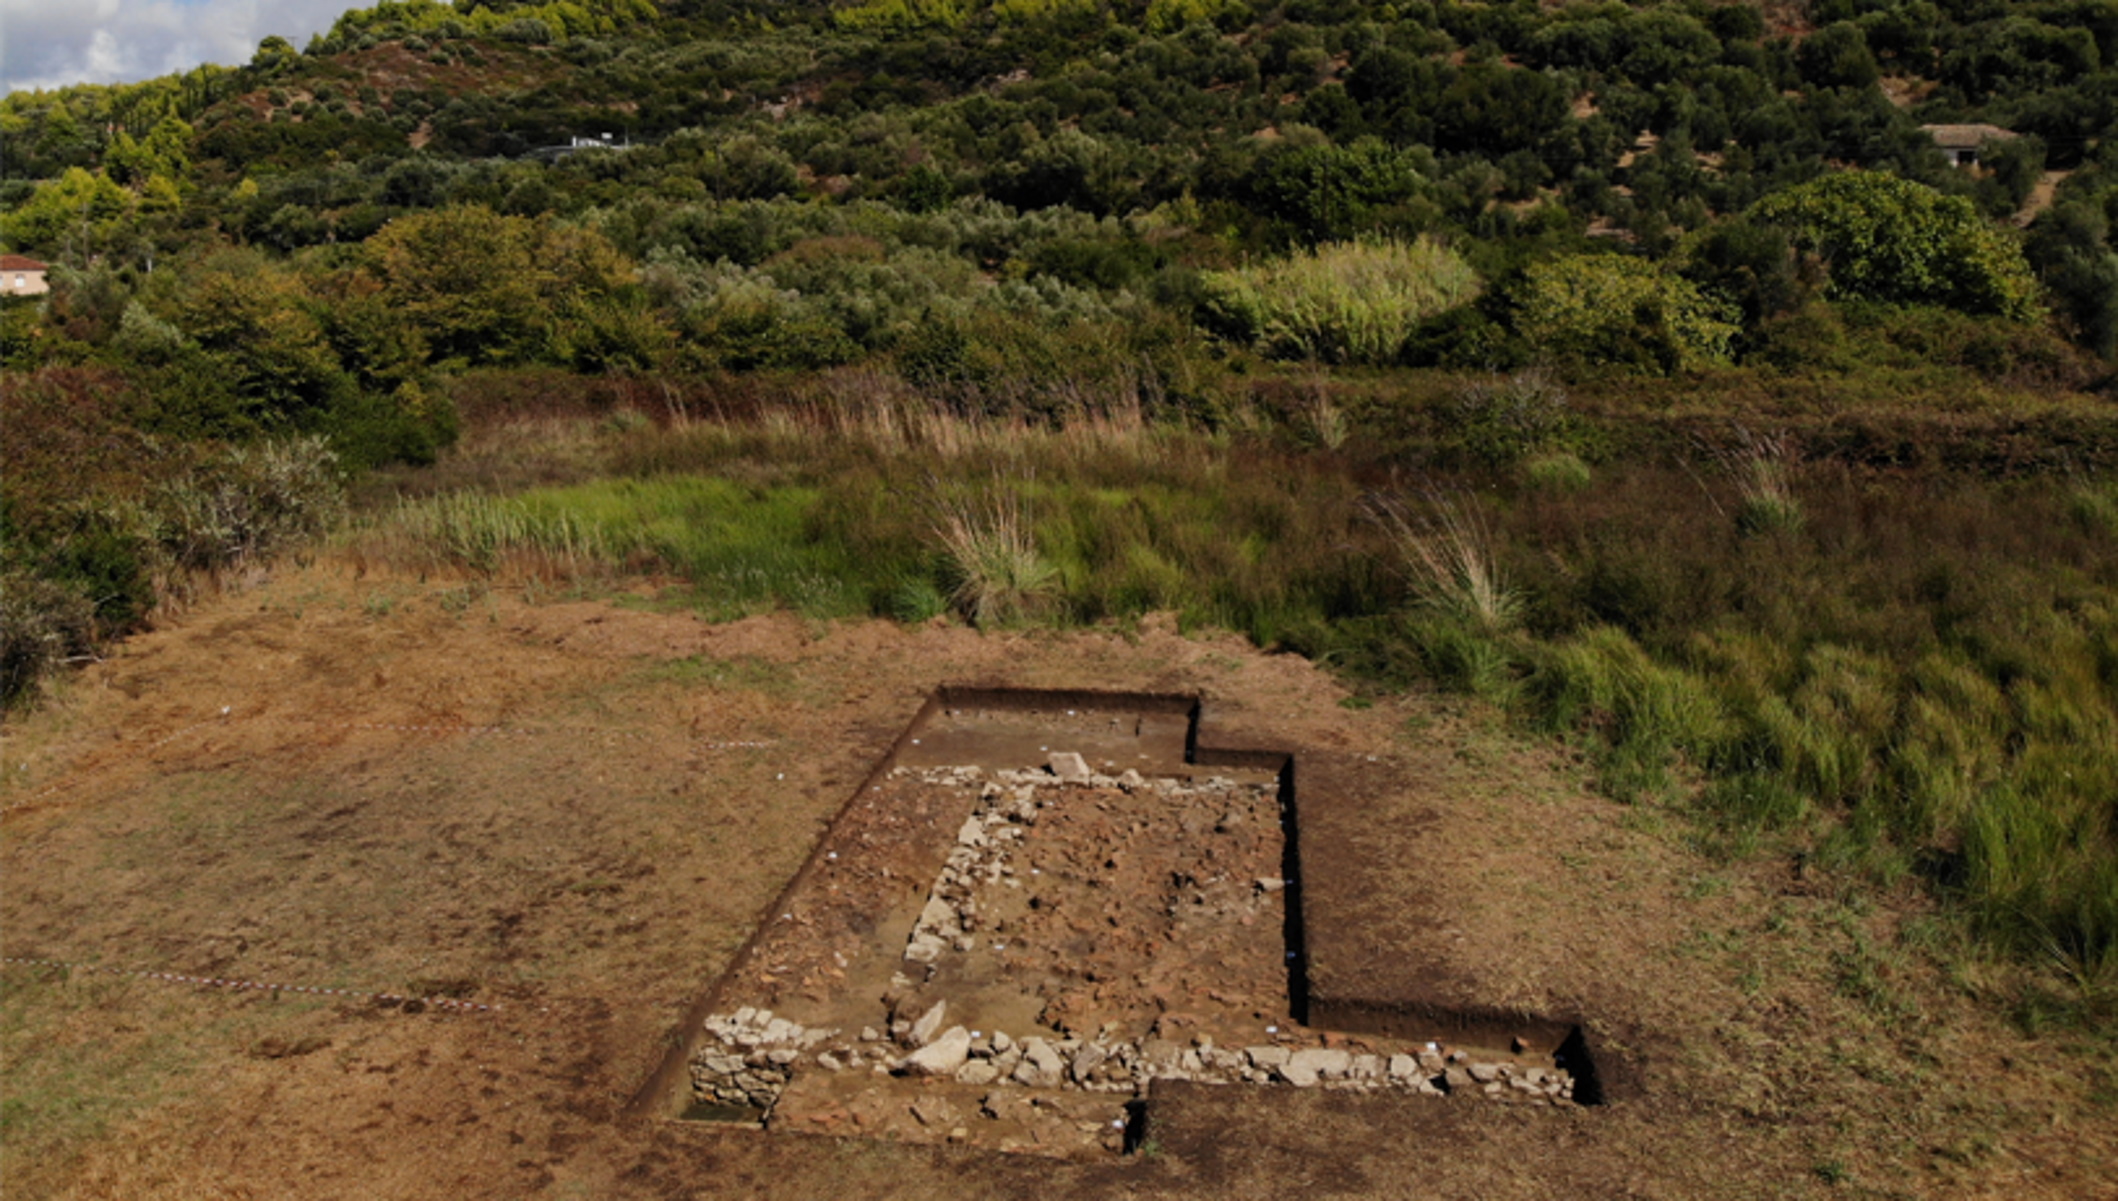 Βρέθηκε ναόσχημο κτίριο στο Κλειδί Σαμικού, πιθανότατα ο περίφημος ναός του Ποσειδώνα